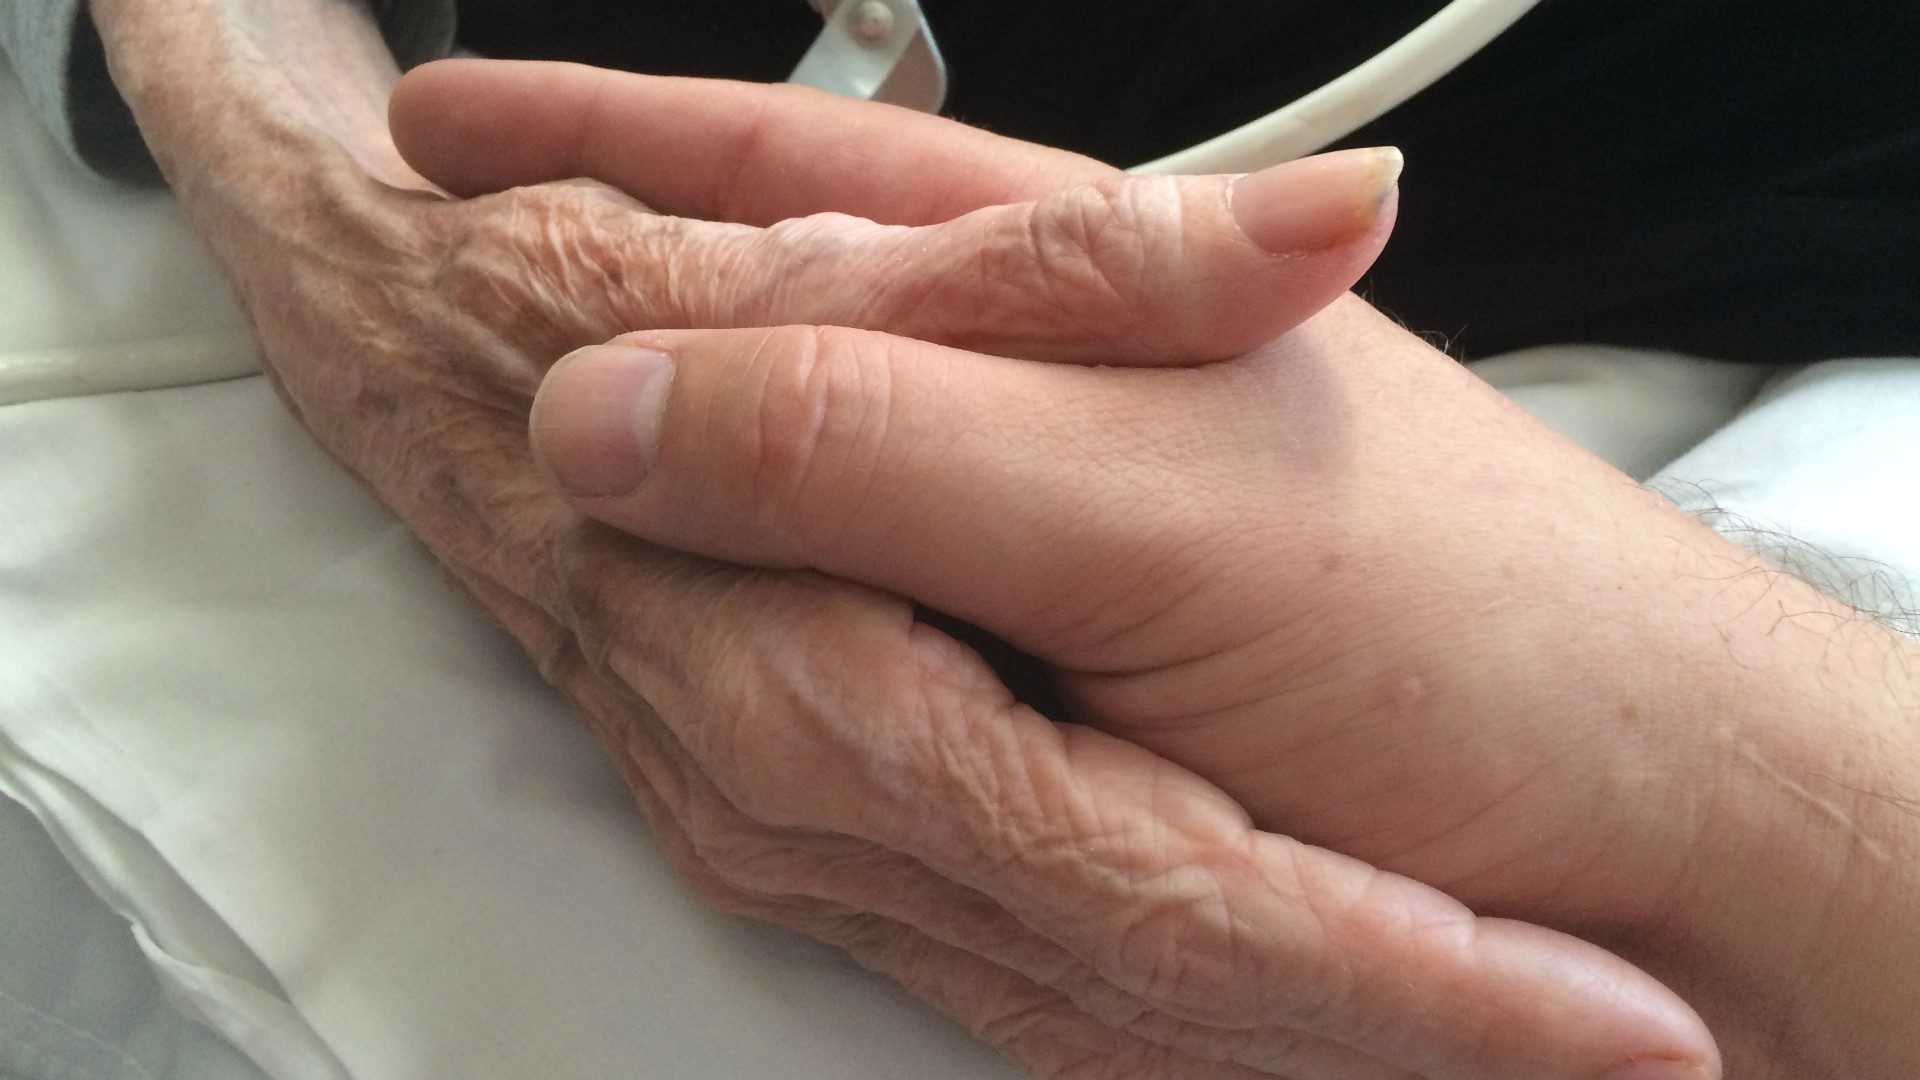 Les soins palliatifs visent à soulager les souffrances des personnes en fin de vie (Photo: Mercurywoodrose/Wikimedia Commons/CC BY-SA 4.0)